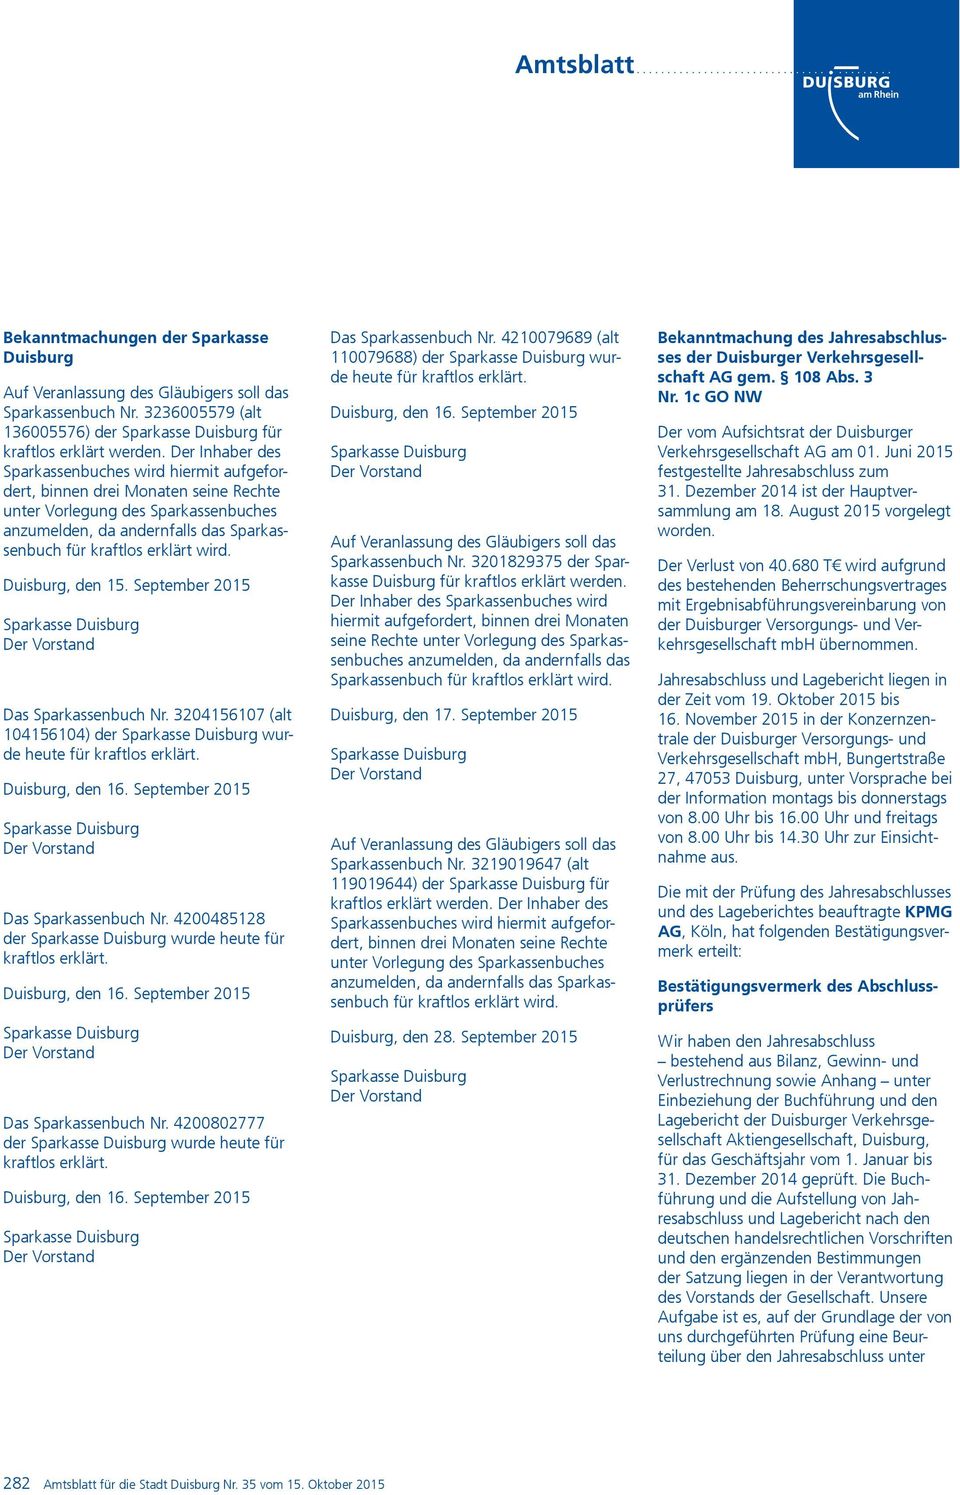 wird. Duisburg, den 15. September 2015 Sparkasse Duisburg Der Vorstand Das Sparkassenbuch Nr. 3204156107 (alt 104156104) der Sparkasse Duisburg wurde heute für kraftlos erklärt. Duisburg, den 16.